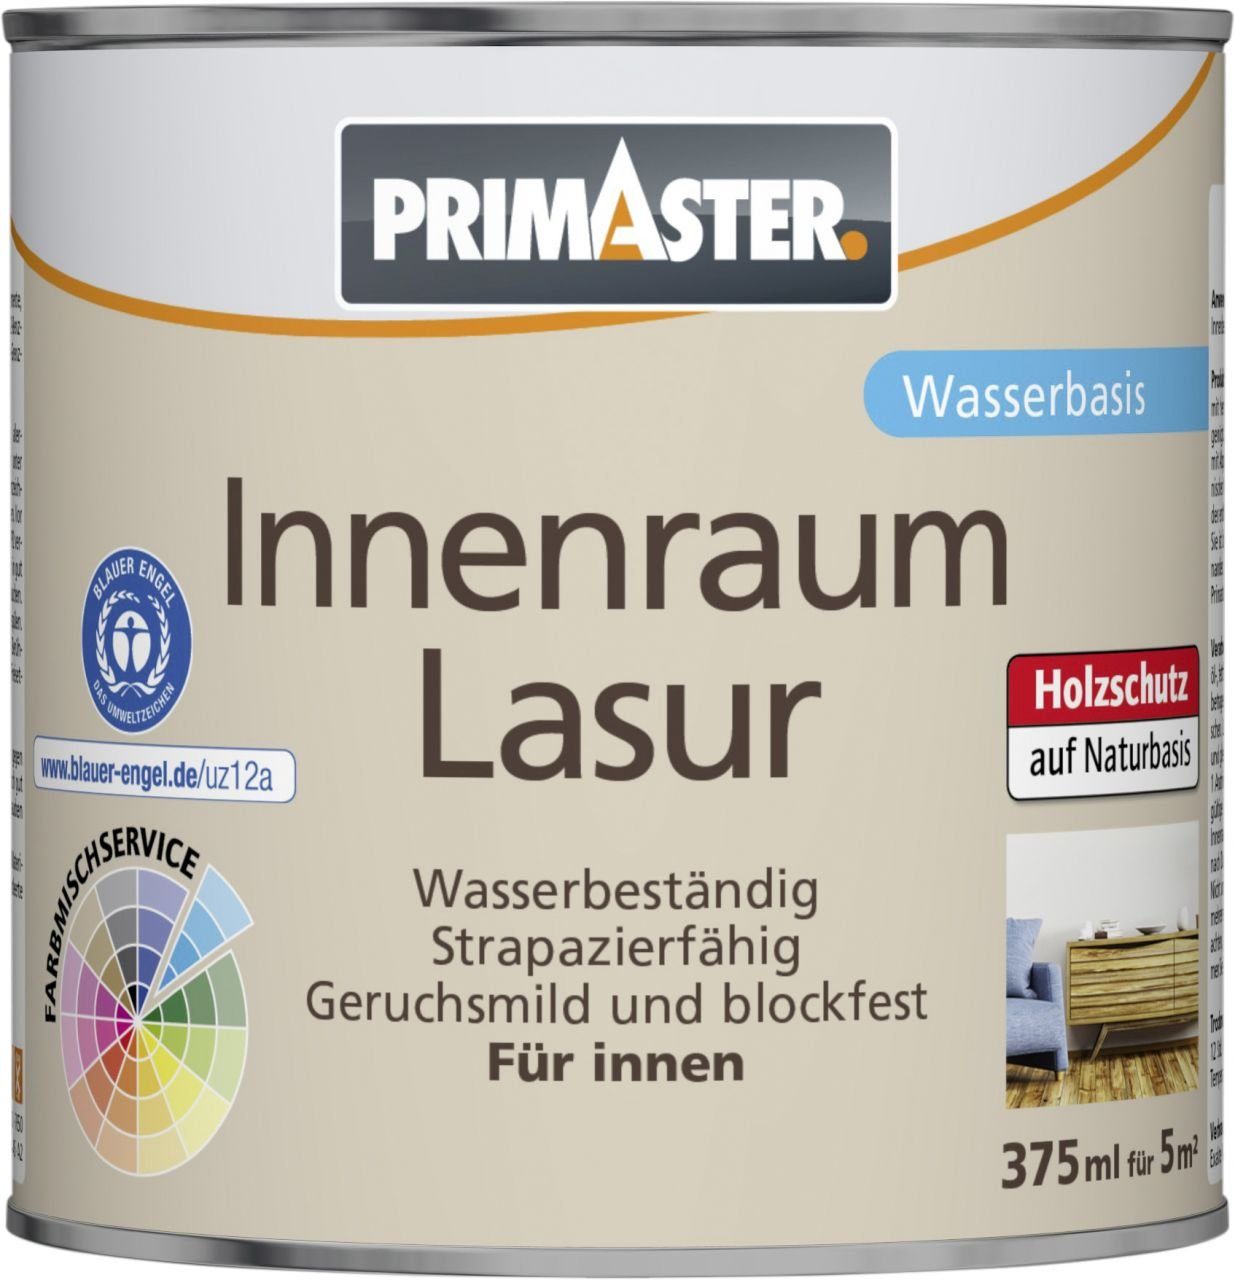 Primaster ml 375 Primaster tiefschwarz Innenraumlasur Lasur